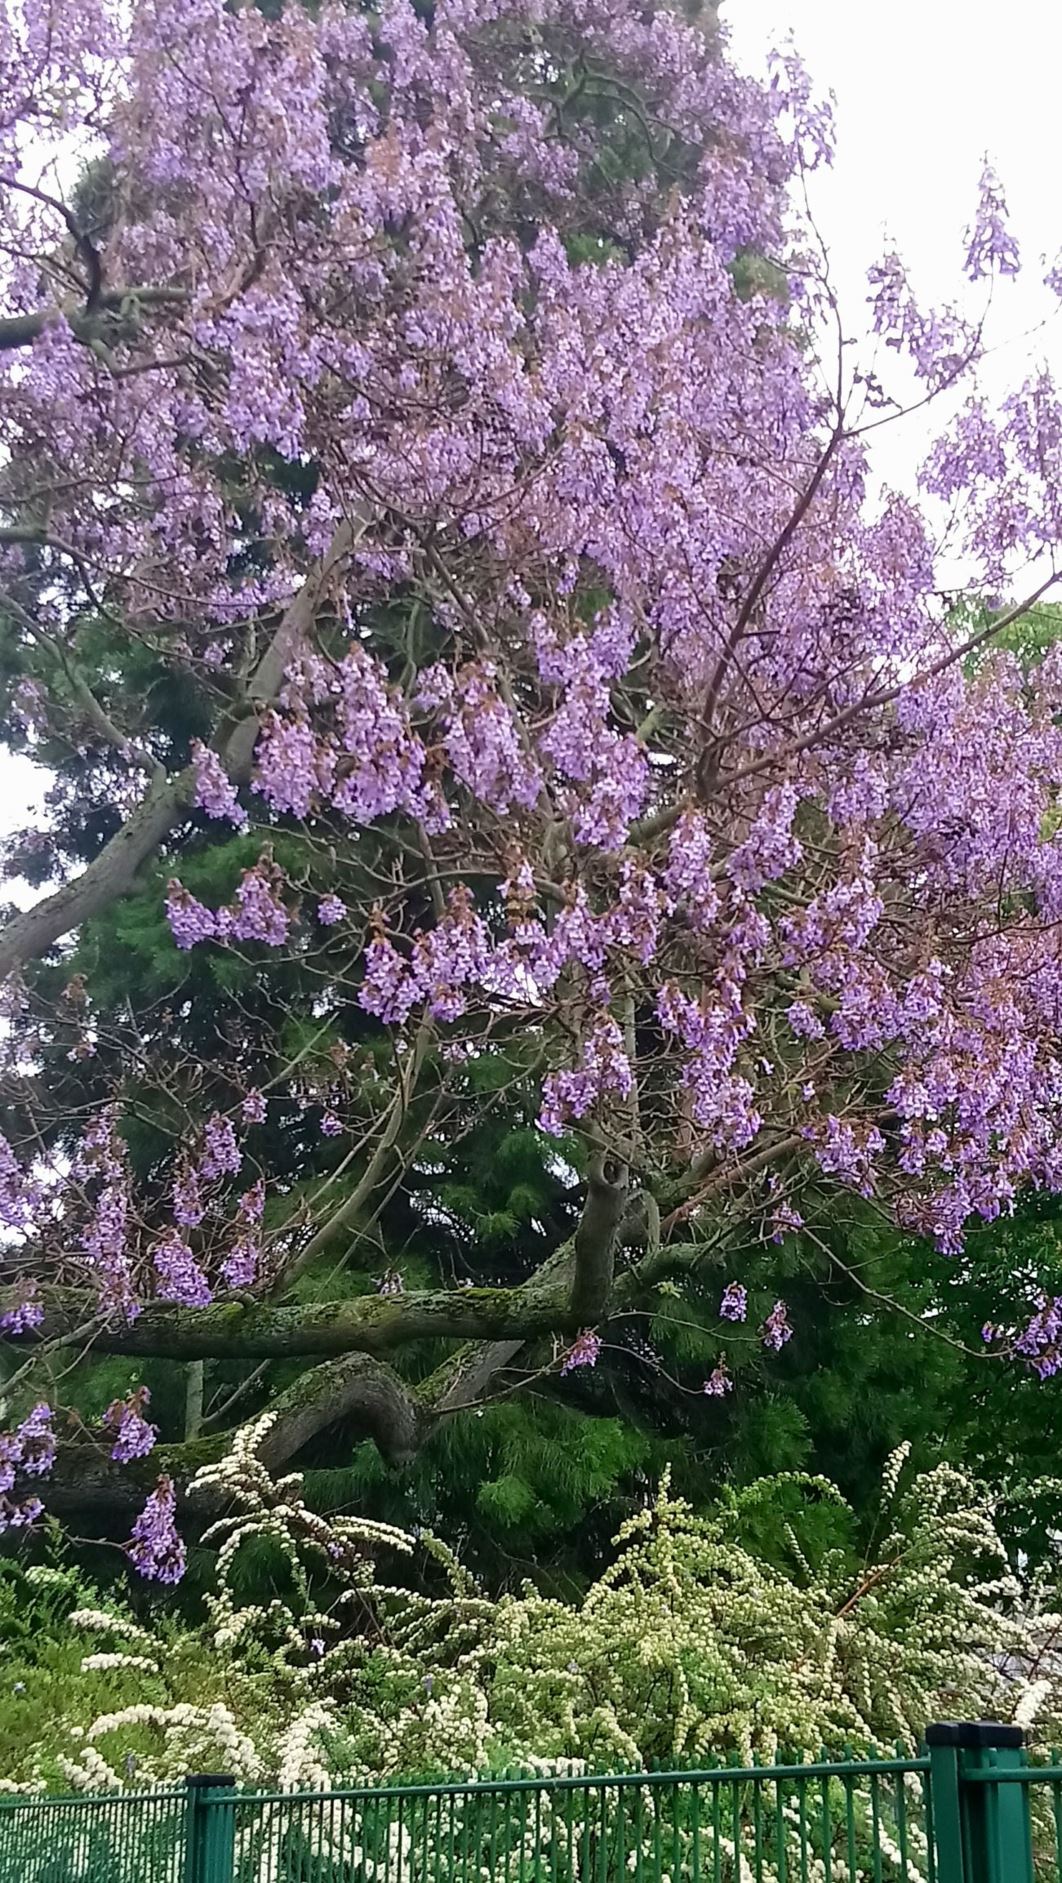 Paulownia tomentosa - Chinesischer Blauglockenbaum, princess tree